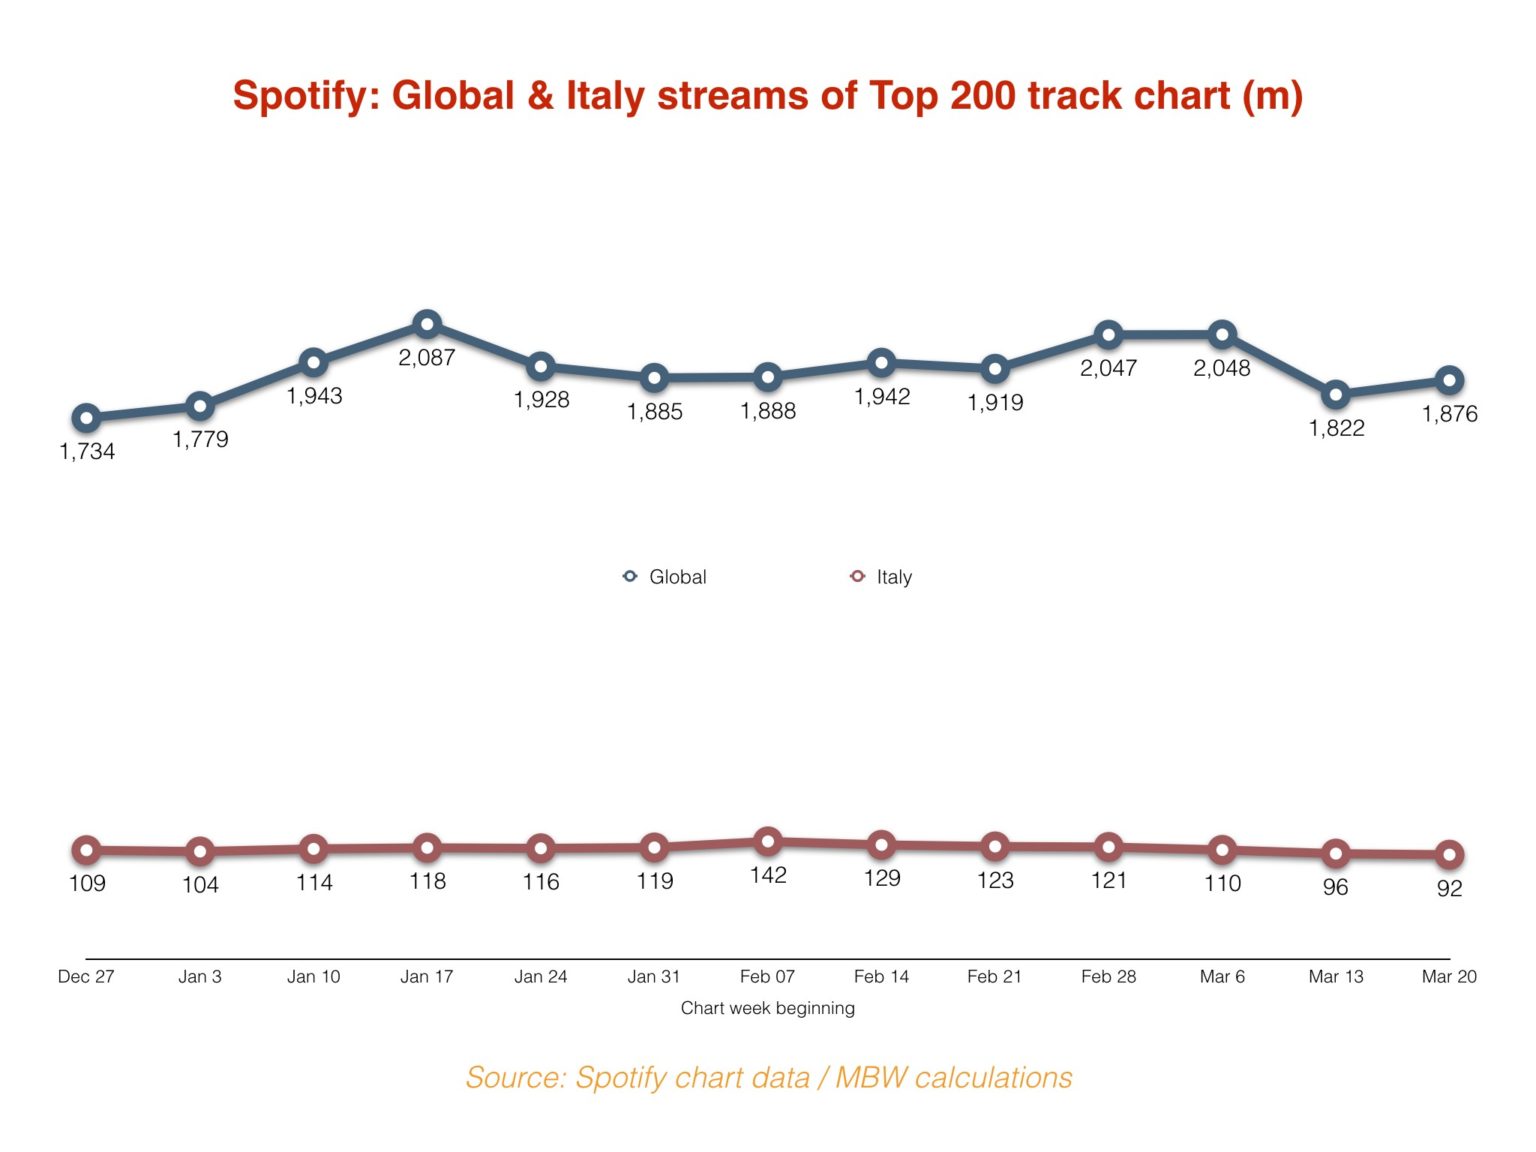 Lượng nghe nhạc toàn cầu trên Spotify tăng 3% trong tuần qua